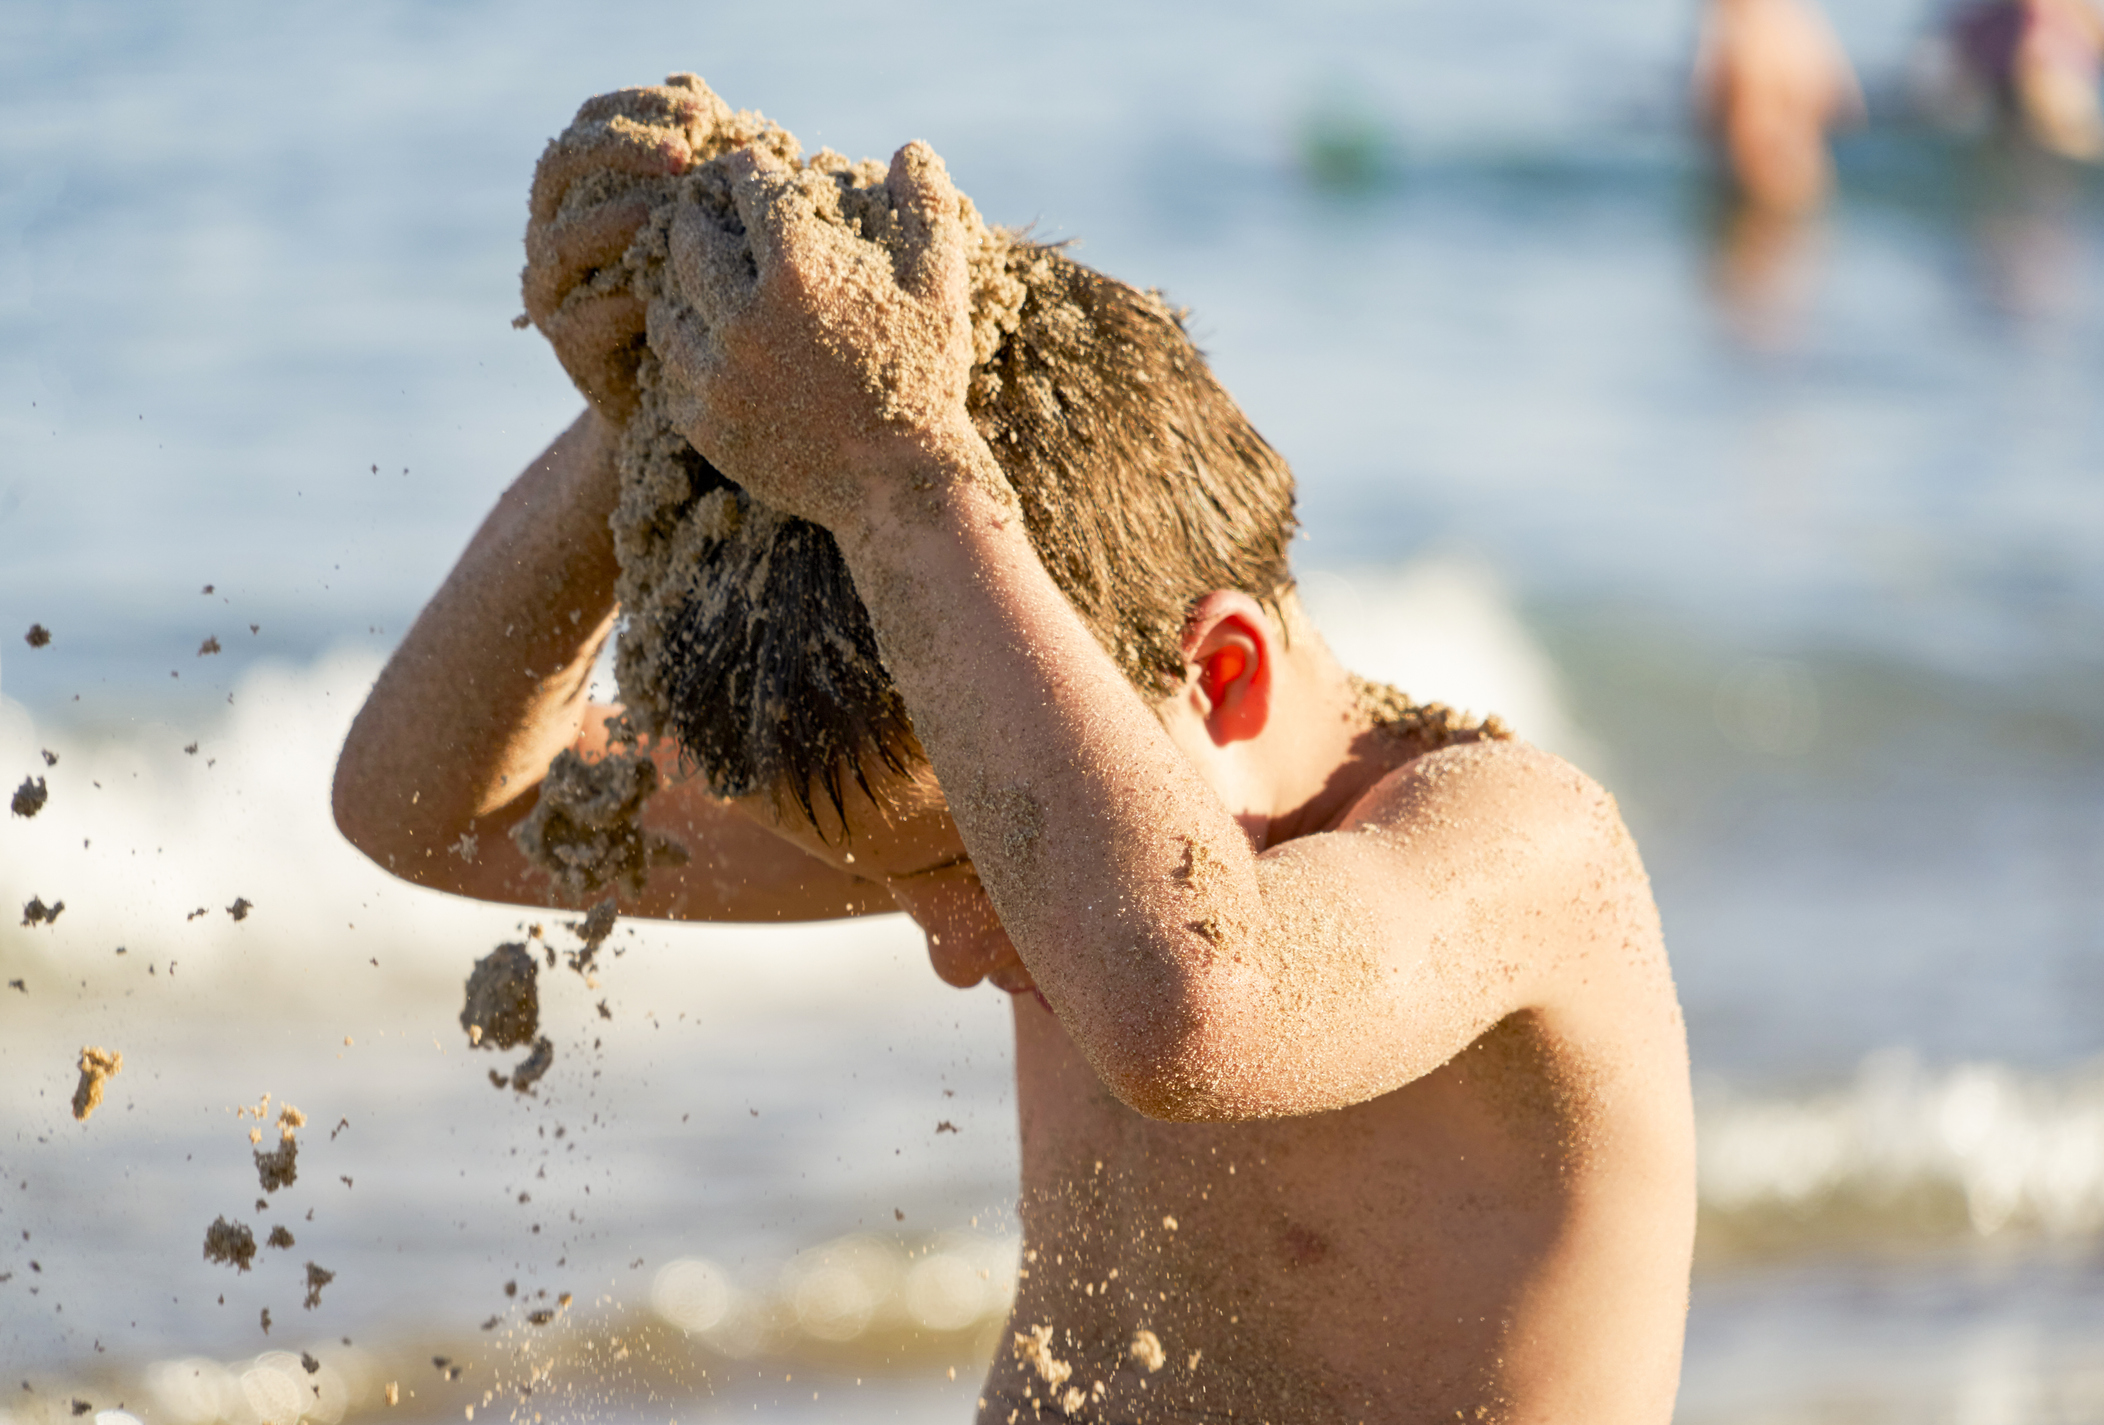 Un niño se tira arena a sí mismo en plena playa.